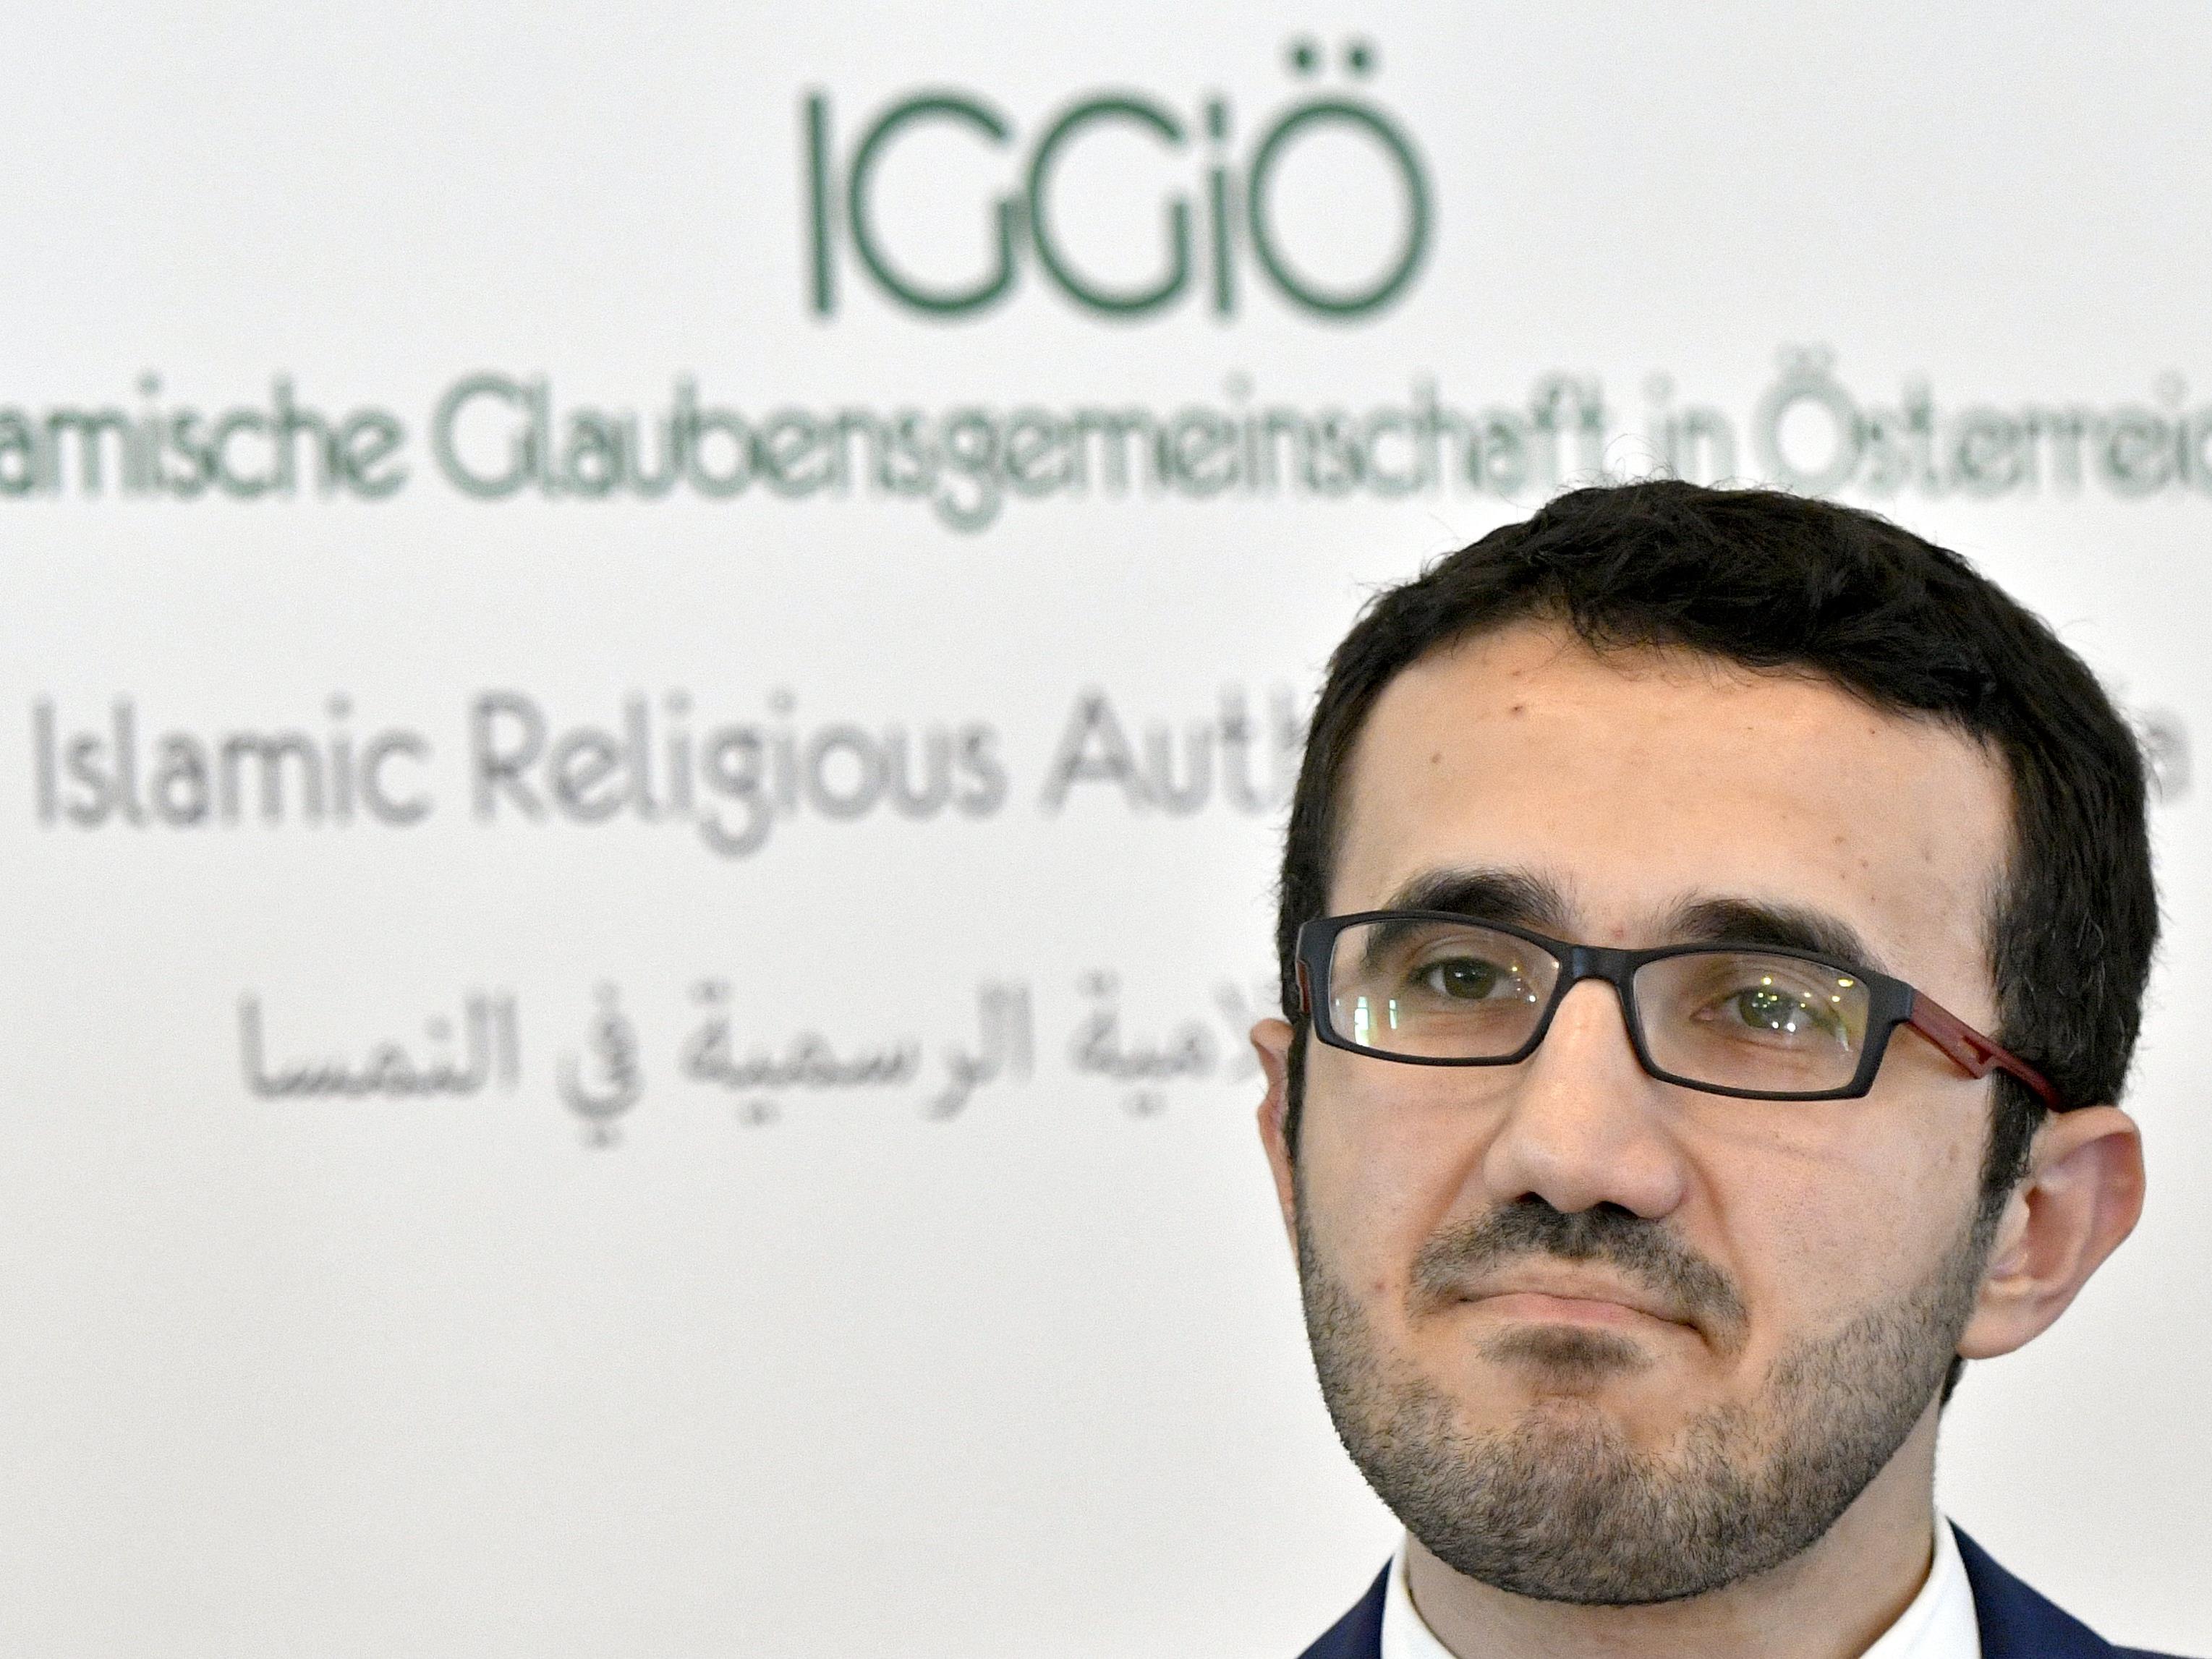 Ibrahim Olgun, Präsident der Islamischen Glaubensgemeinschaft in Österreich, erläuterte auf einer Pressekonferenz die Zukunftspläne der IGGiÖ.